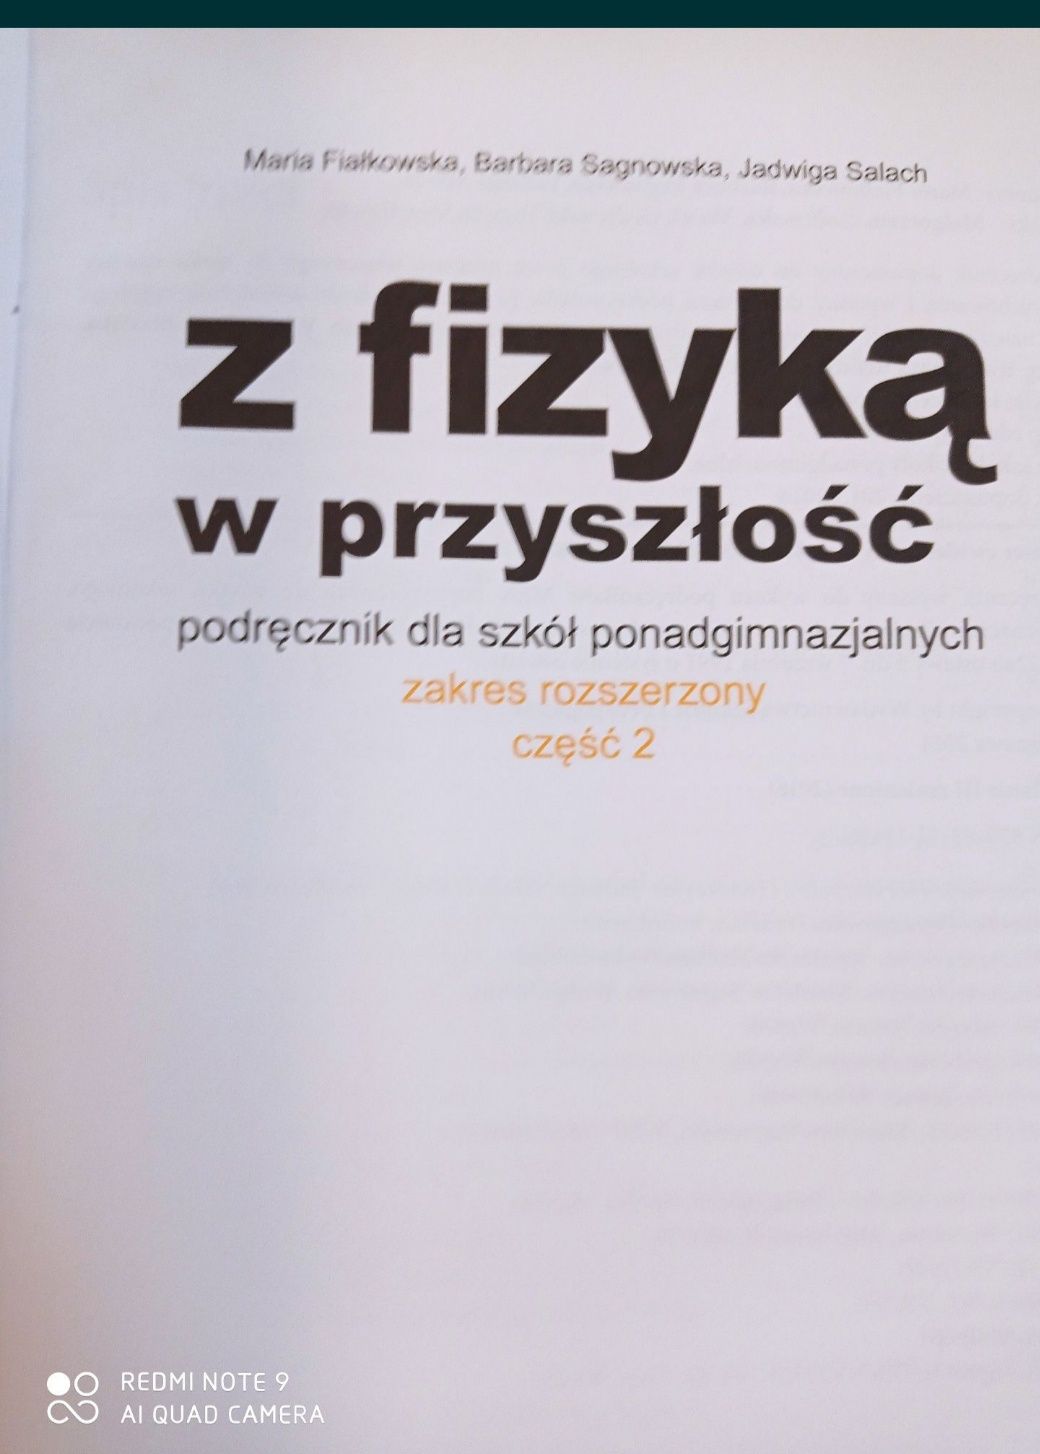 Fizyka część 2 Maria Fiałkowska zakres rozszerzony 2014
Fiz